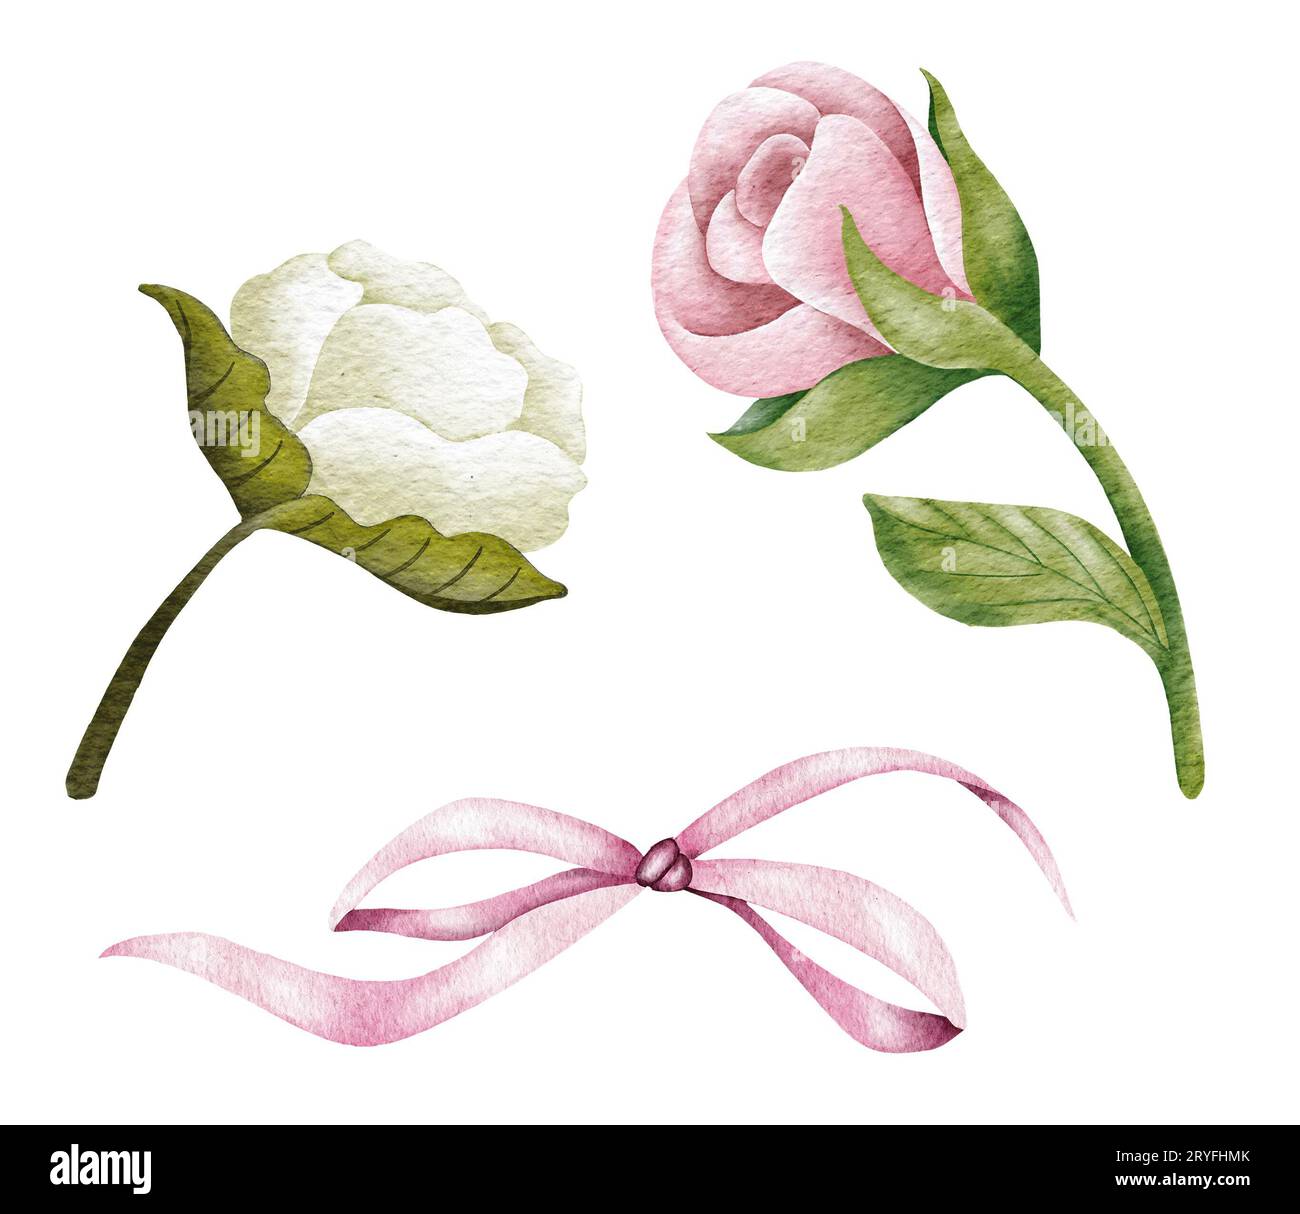 Acquerello rosa e bianco fiori di rosa, foglie verdi, fiori chiusi. Delicata illustrazione ad acquerello Foto Stock